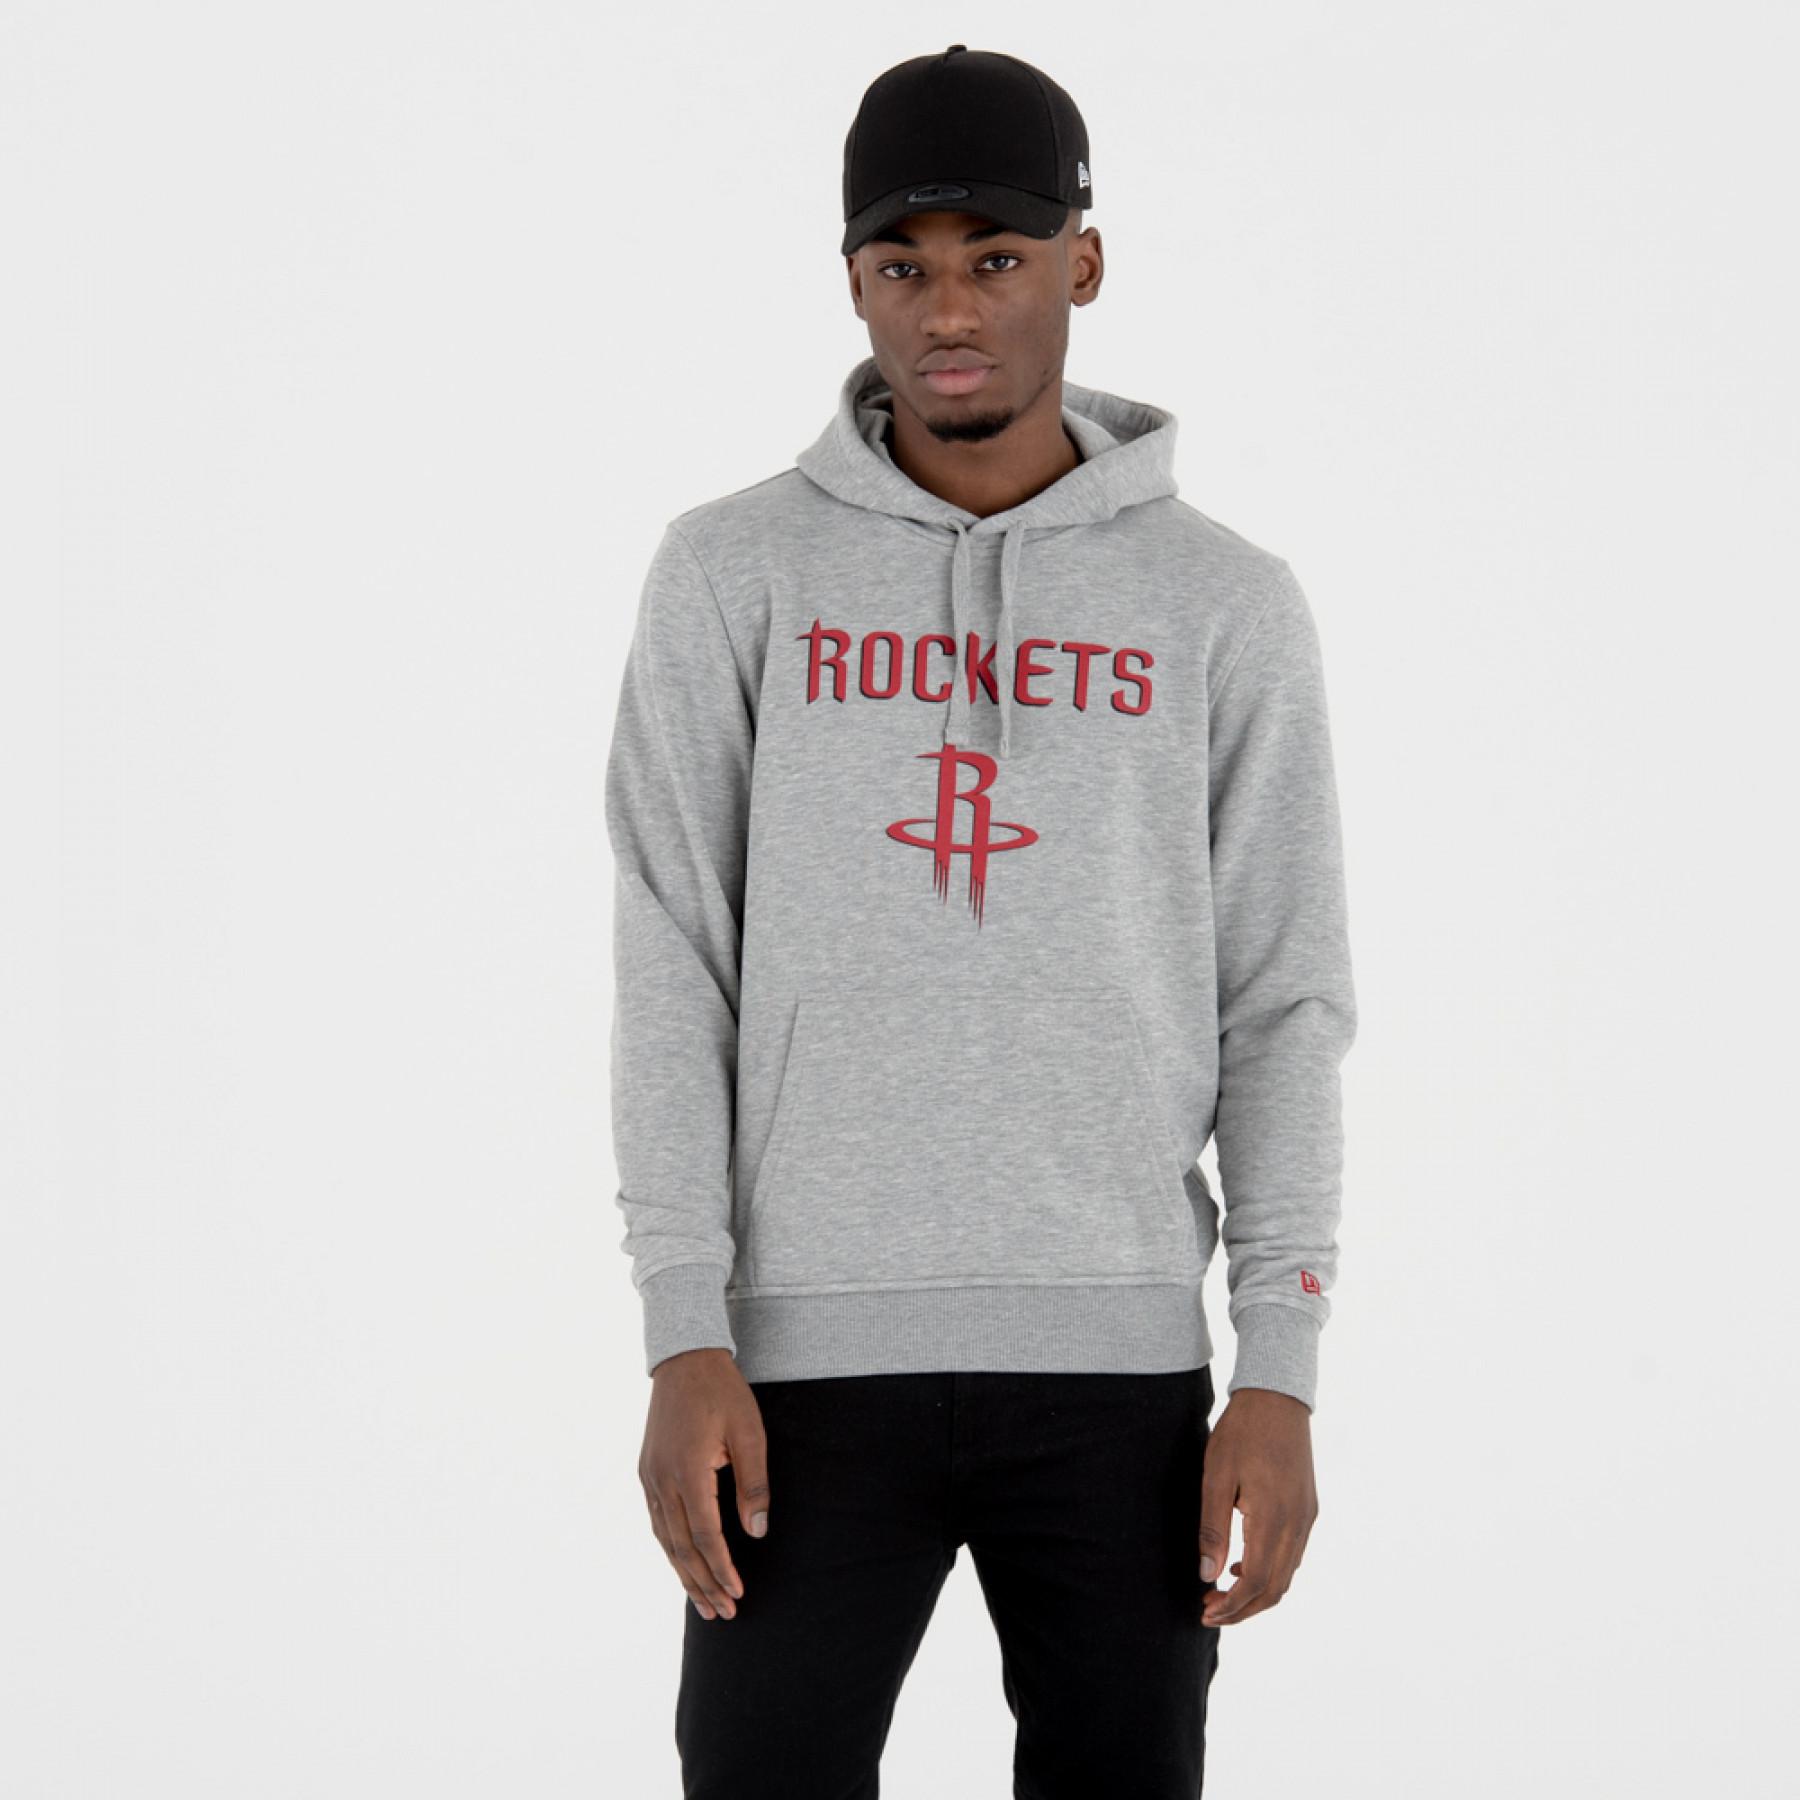 Sweat à capuche New Era avec logo de l'équipe Houston Rockets